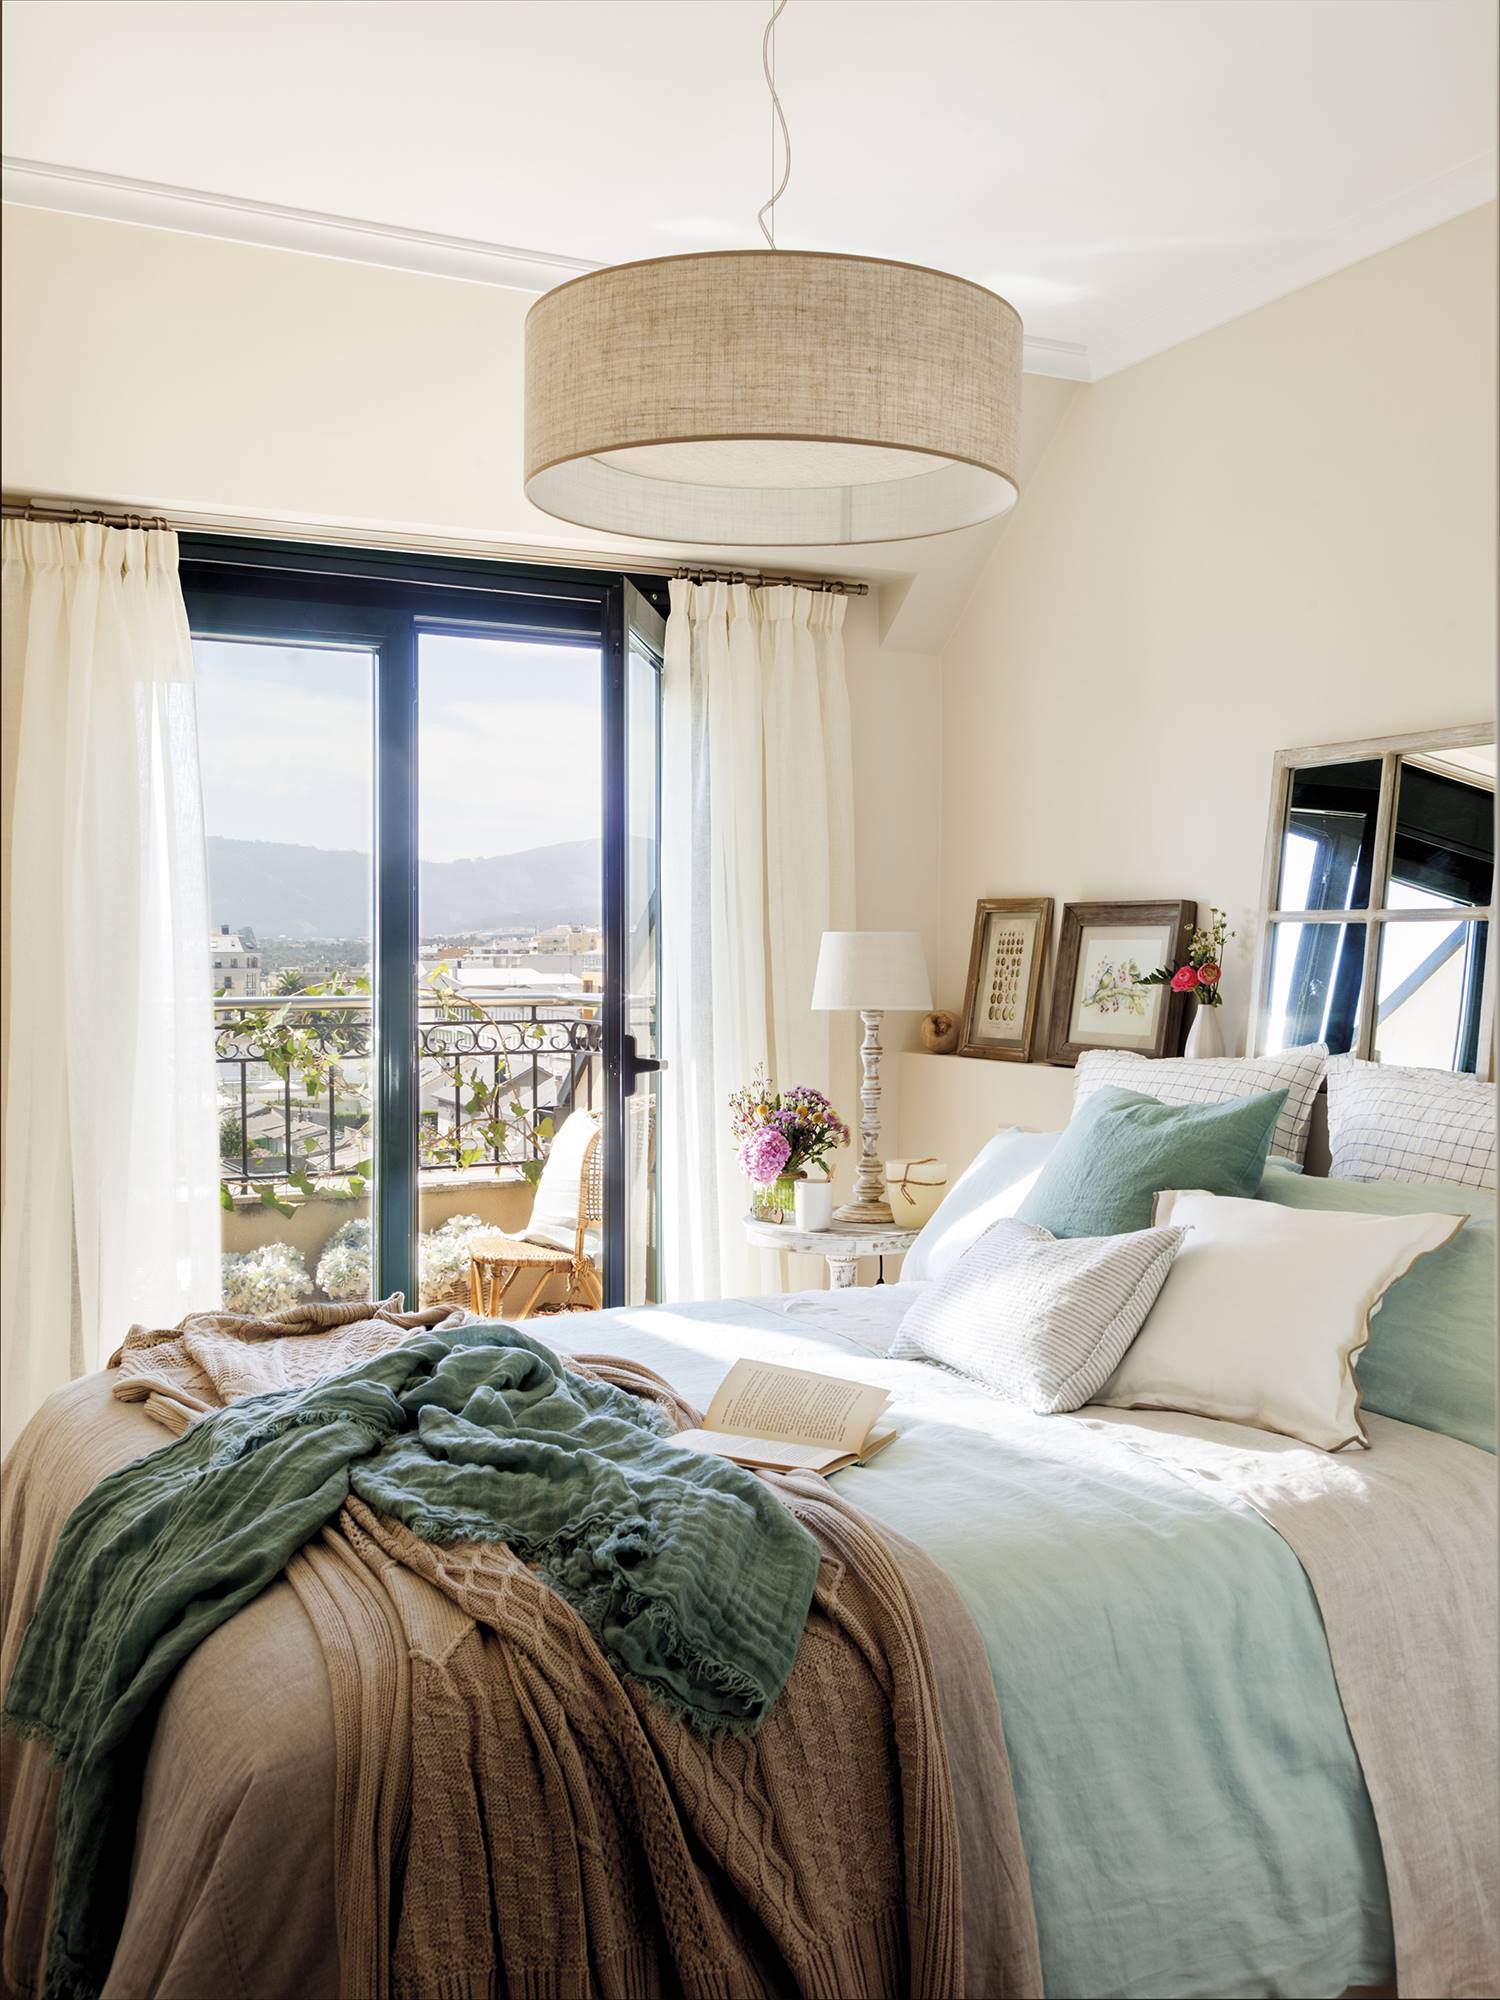 Dormitorio principal en tonos claros y azules con espejo y pequeños cuadros sobre el cabecero